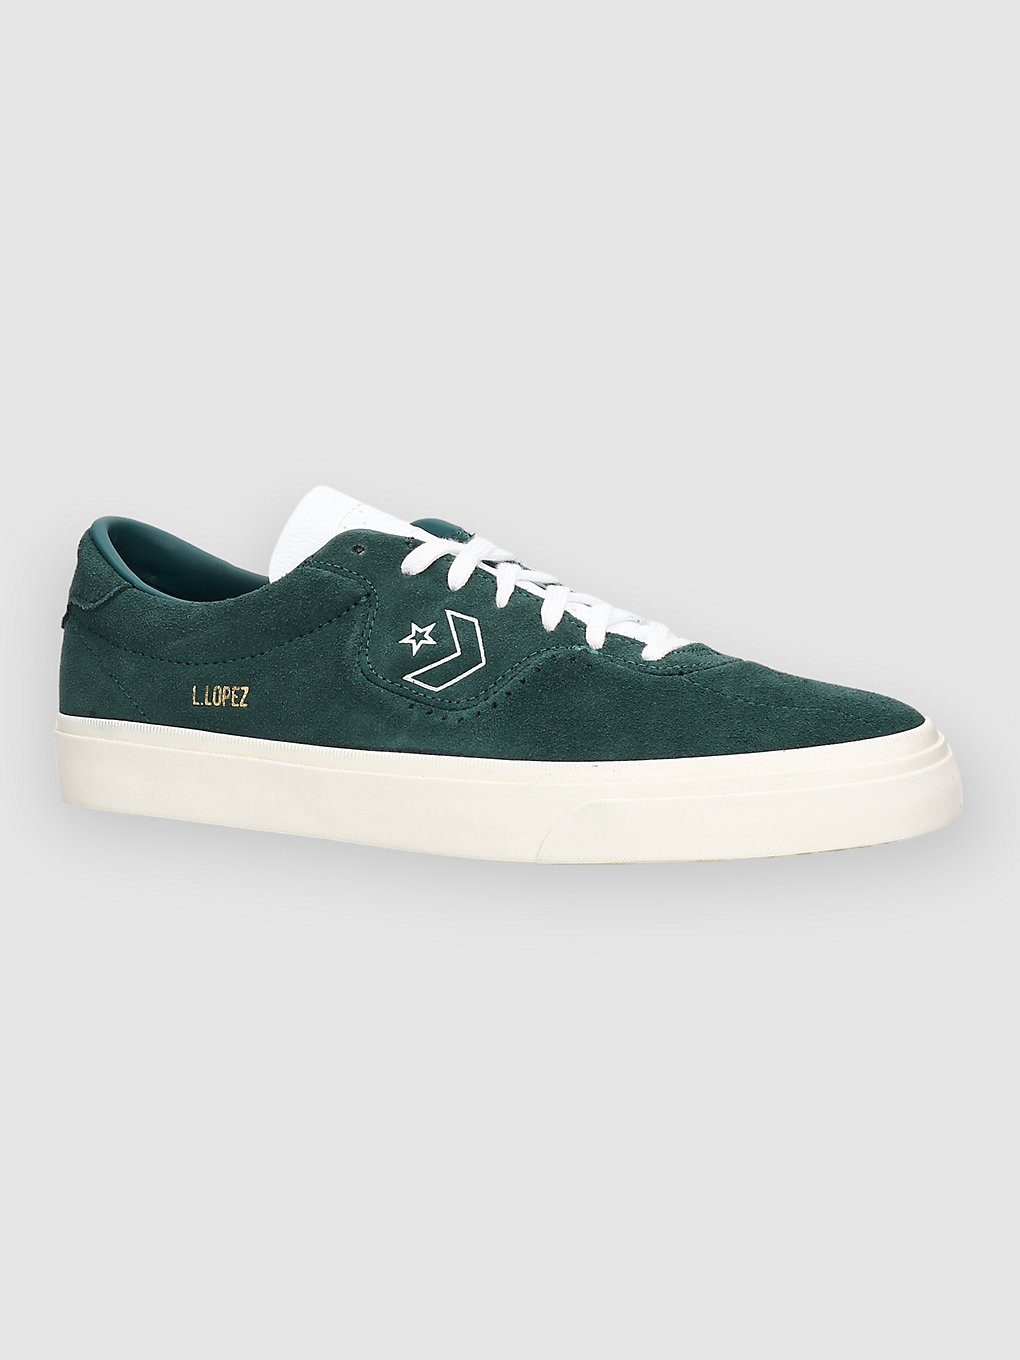 Image of Converse Louie Lopez Pro Scarpe da Skate verde